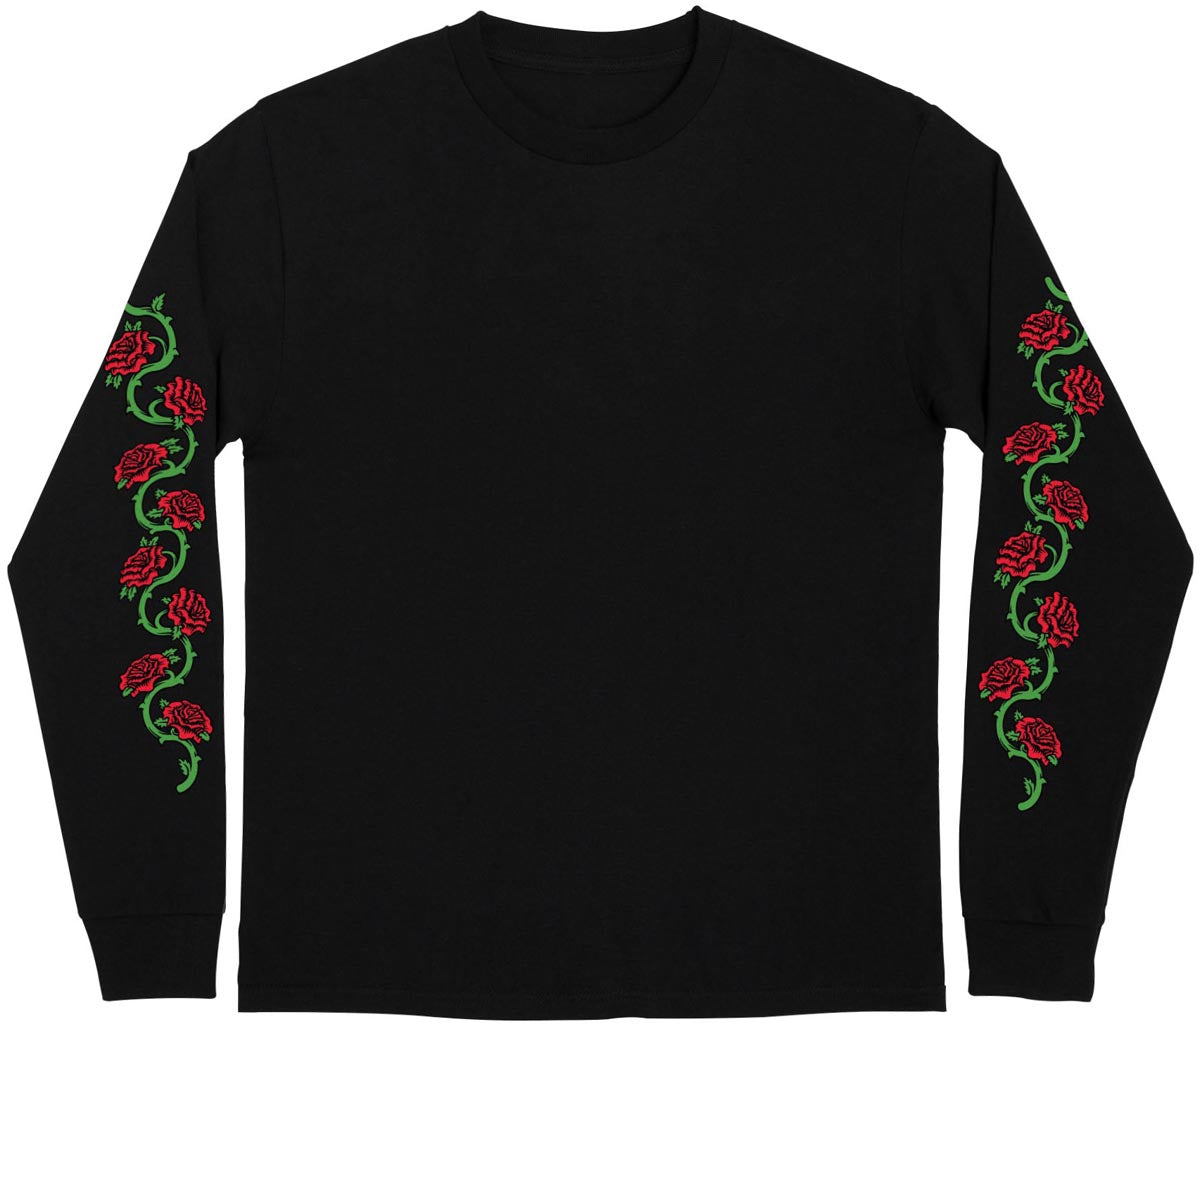 Santa Cruz Dressen Mash Up Long Sleeve T-Shirt - Black image 2